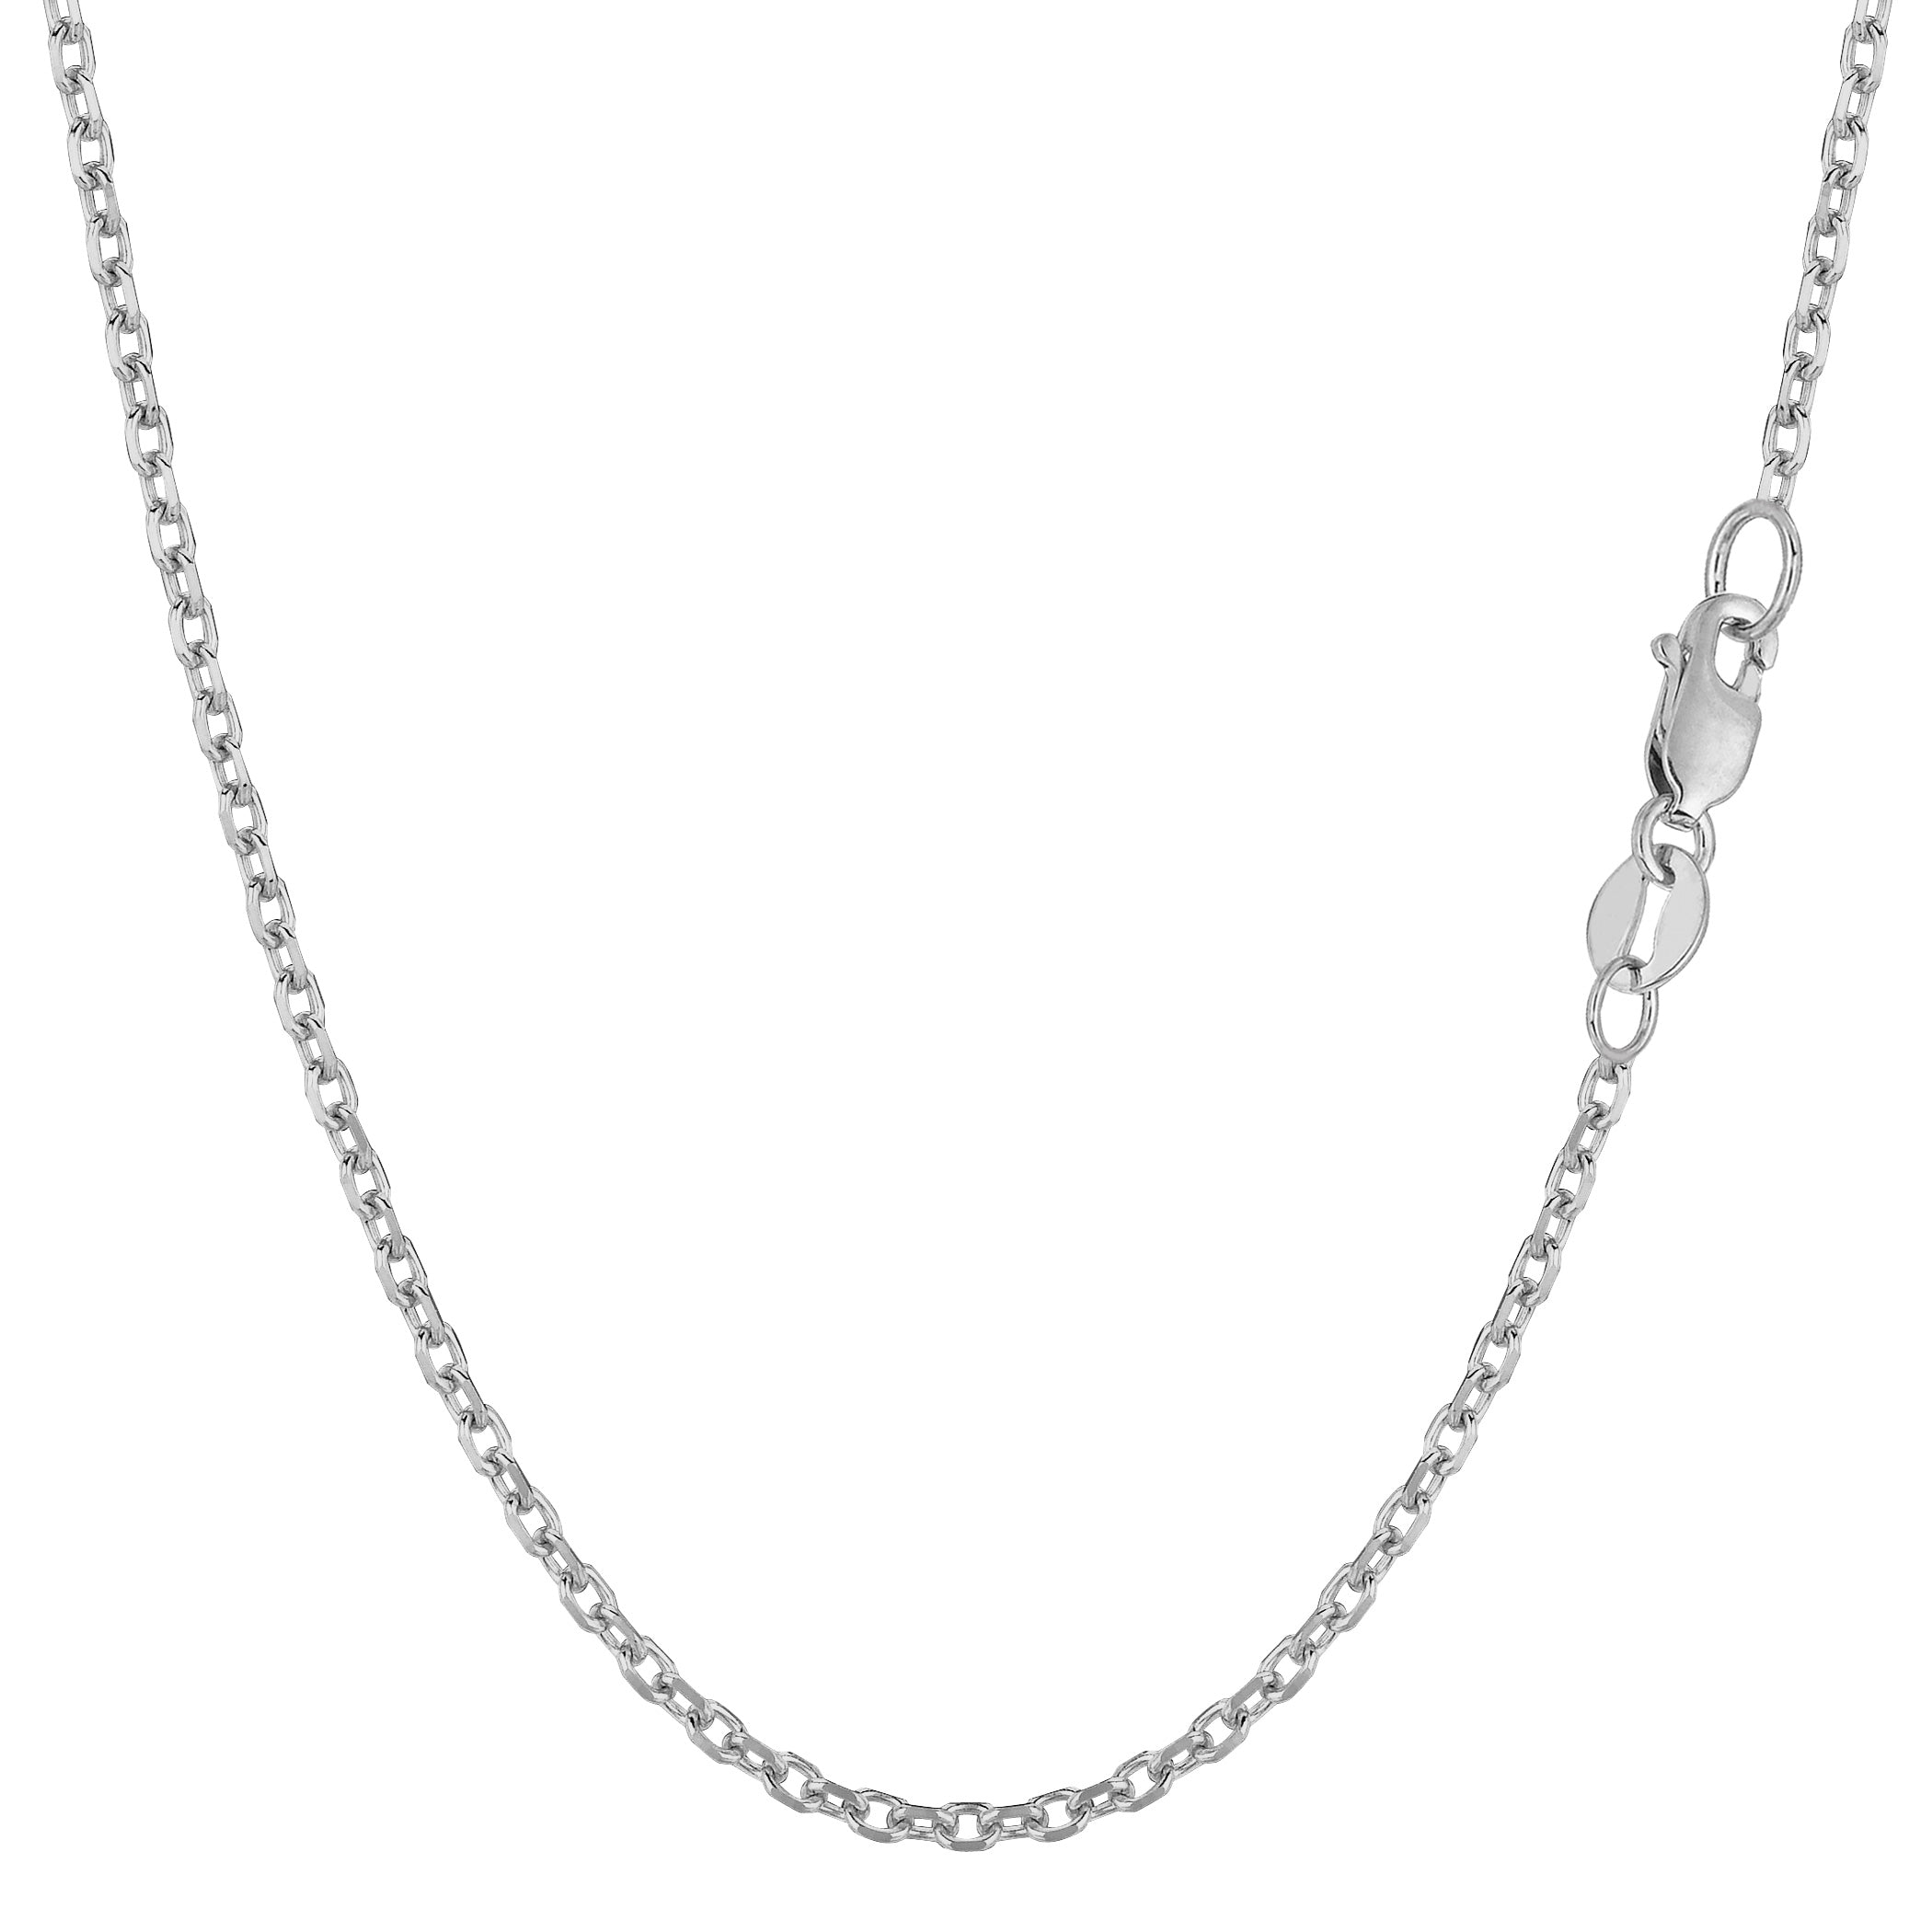 Collar de cadena con eslabones tipo cable de oro blanco de 14 k, joyería fina de diseño de 1,9 mm para hombres y mujeres